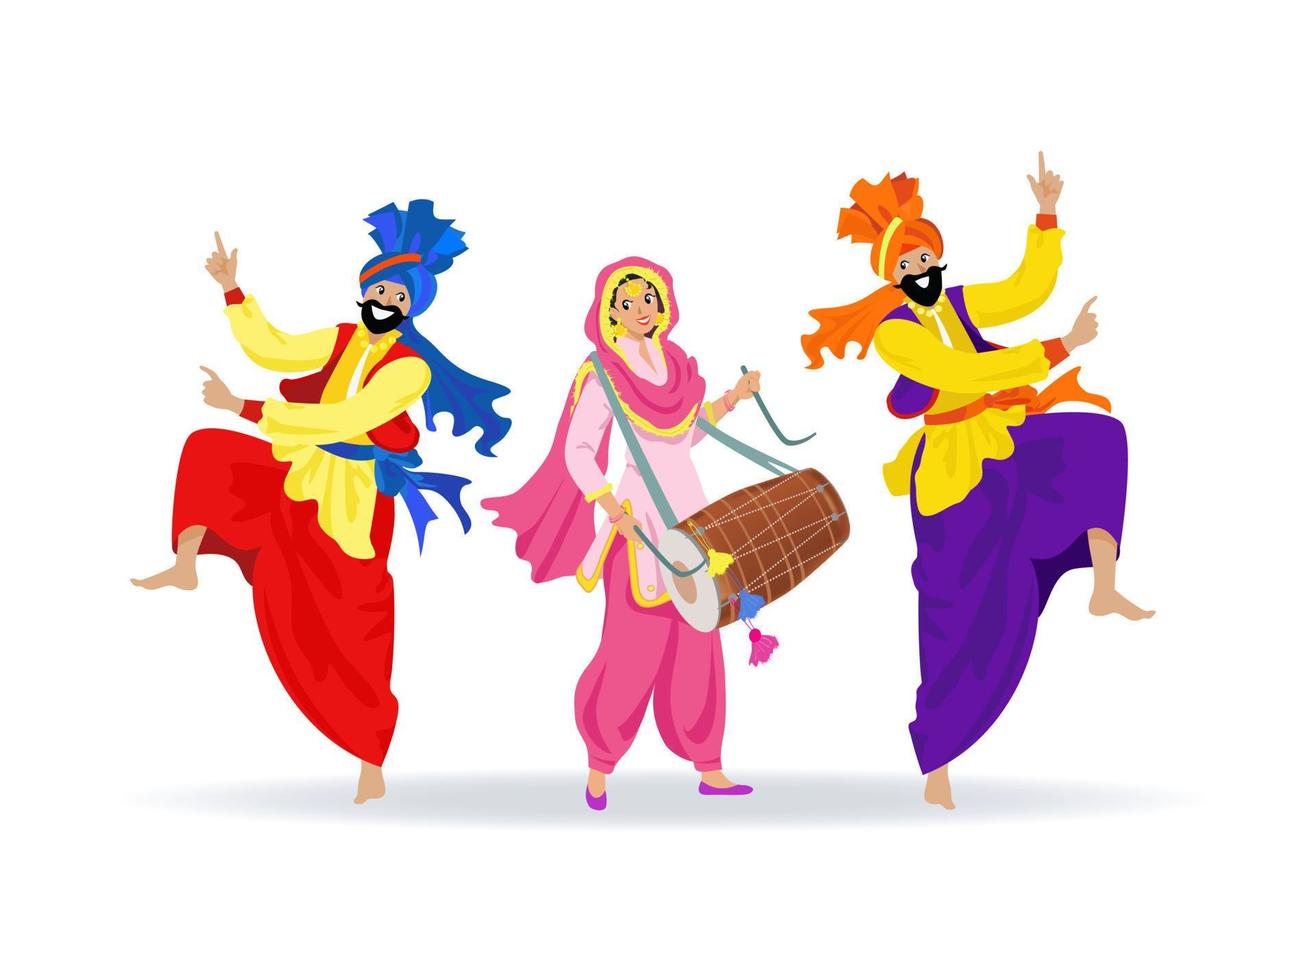 tres personas sikh sonrientes alegres con ropa colorida, bailando saltando hombres barbudos con turbantes, una chica riendo feliz con traje punjabi rosa tocando tambor dhol, celebrando el festival tradicional, boda vector